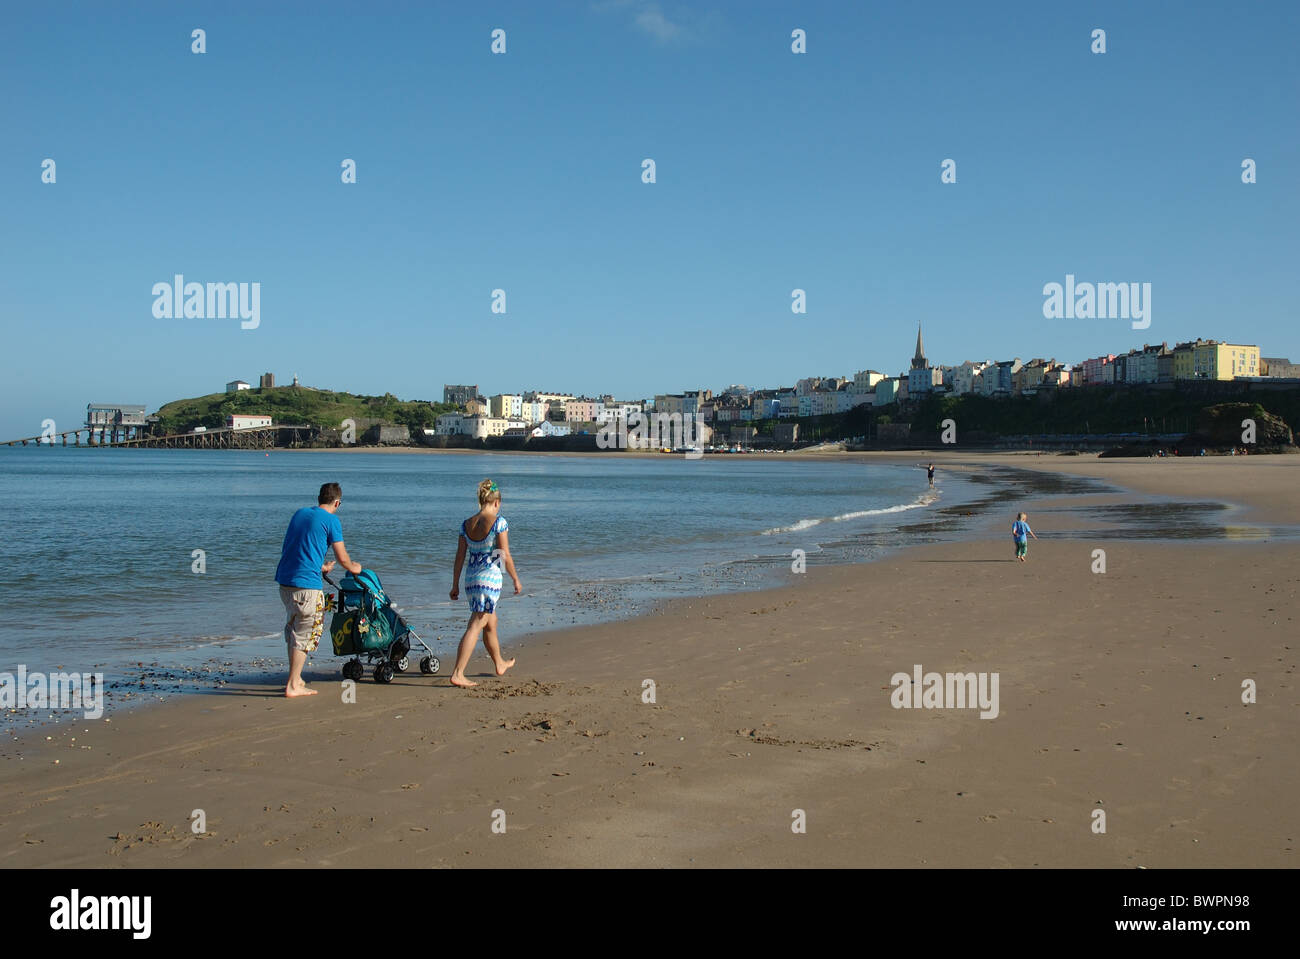 Balades en famille sur North beach, Tenby, Pembrokeshire, Pays de Galles, Royaume-Uni Banque D'Images